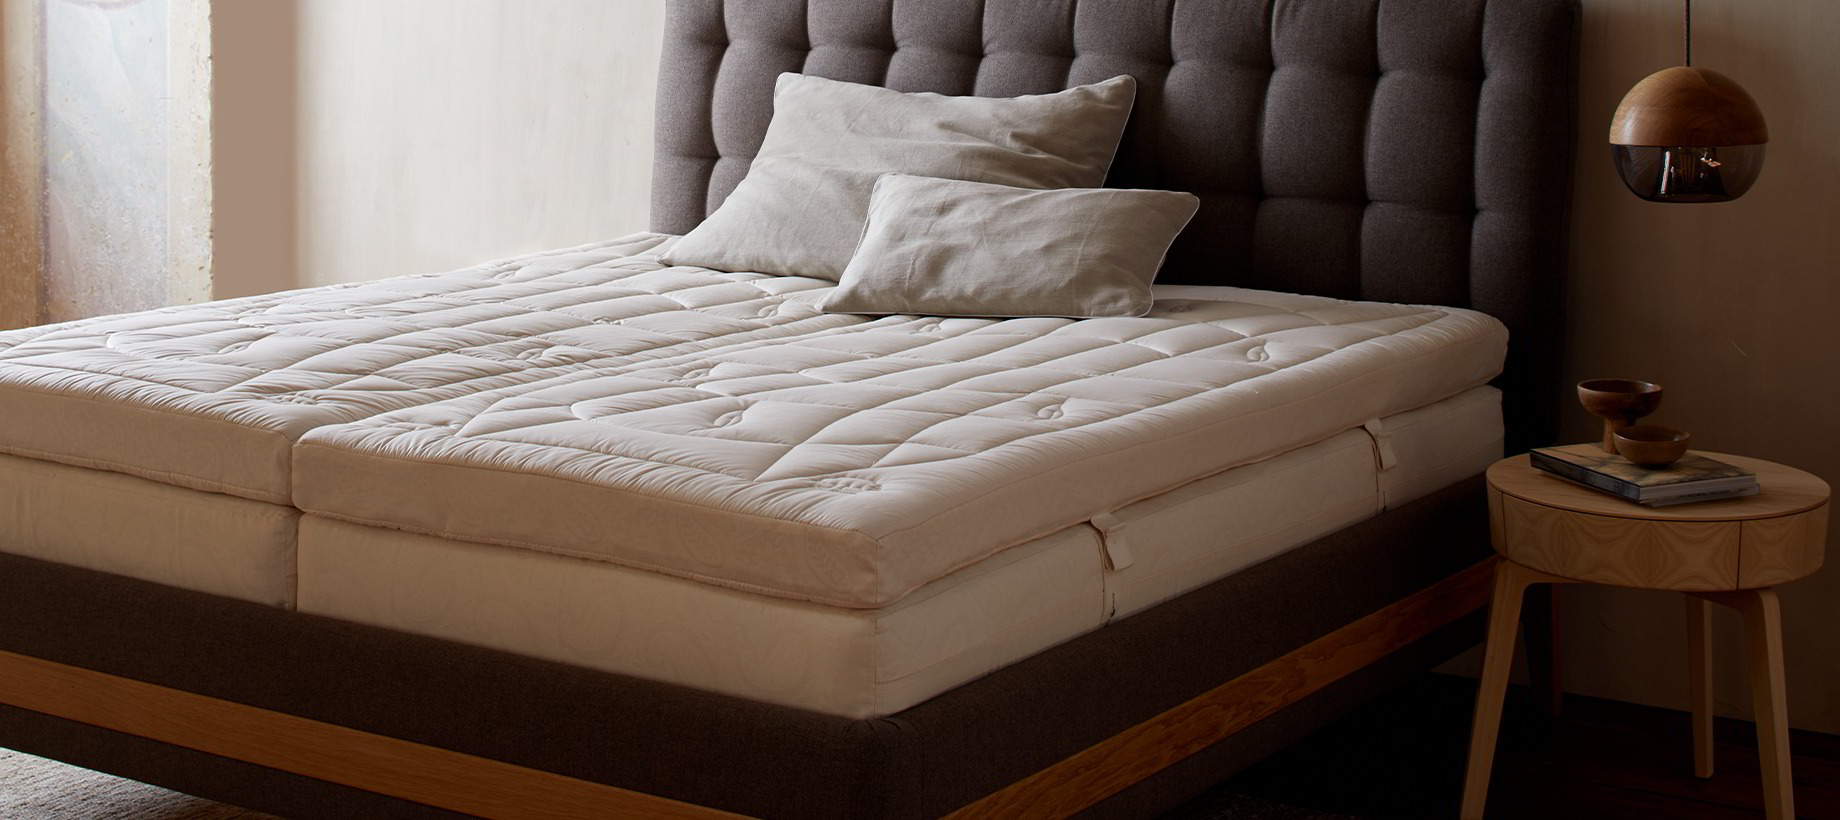 Graues Bett mit Schlafsystem Matratze